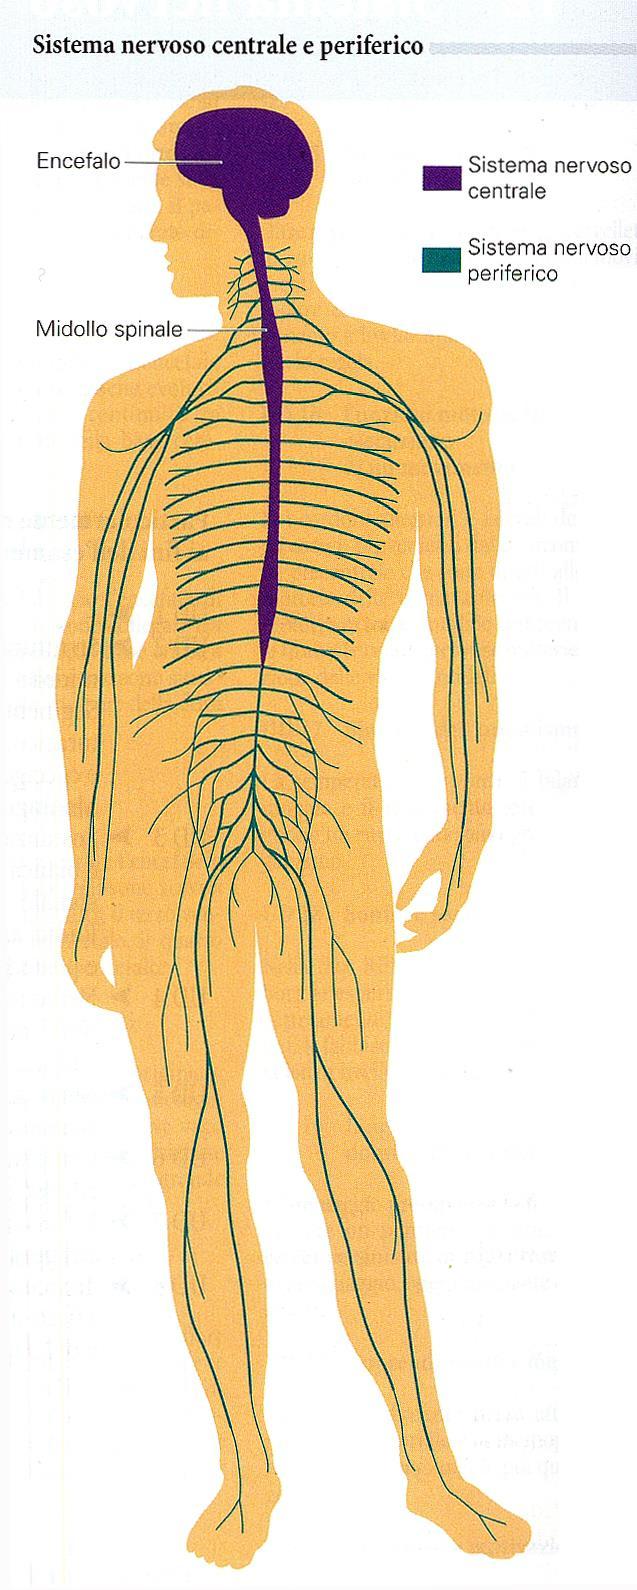 Suddivisione anatomica Sistema nervoso centrale (SNC) Encefalo -> (nella cavità cranica) Midollo spinale -> (nel canale vertebrale) Sistema nervoso